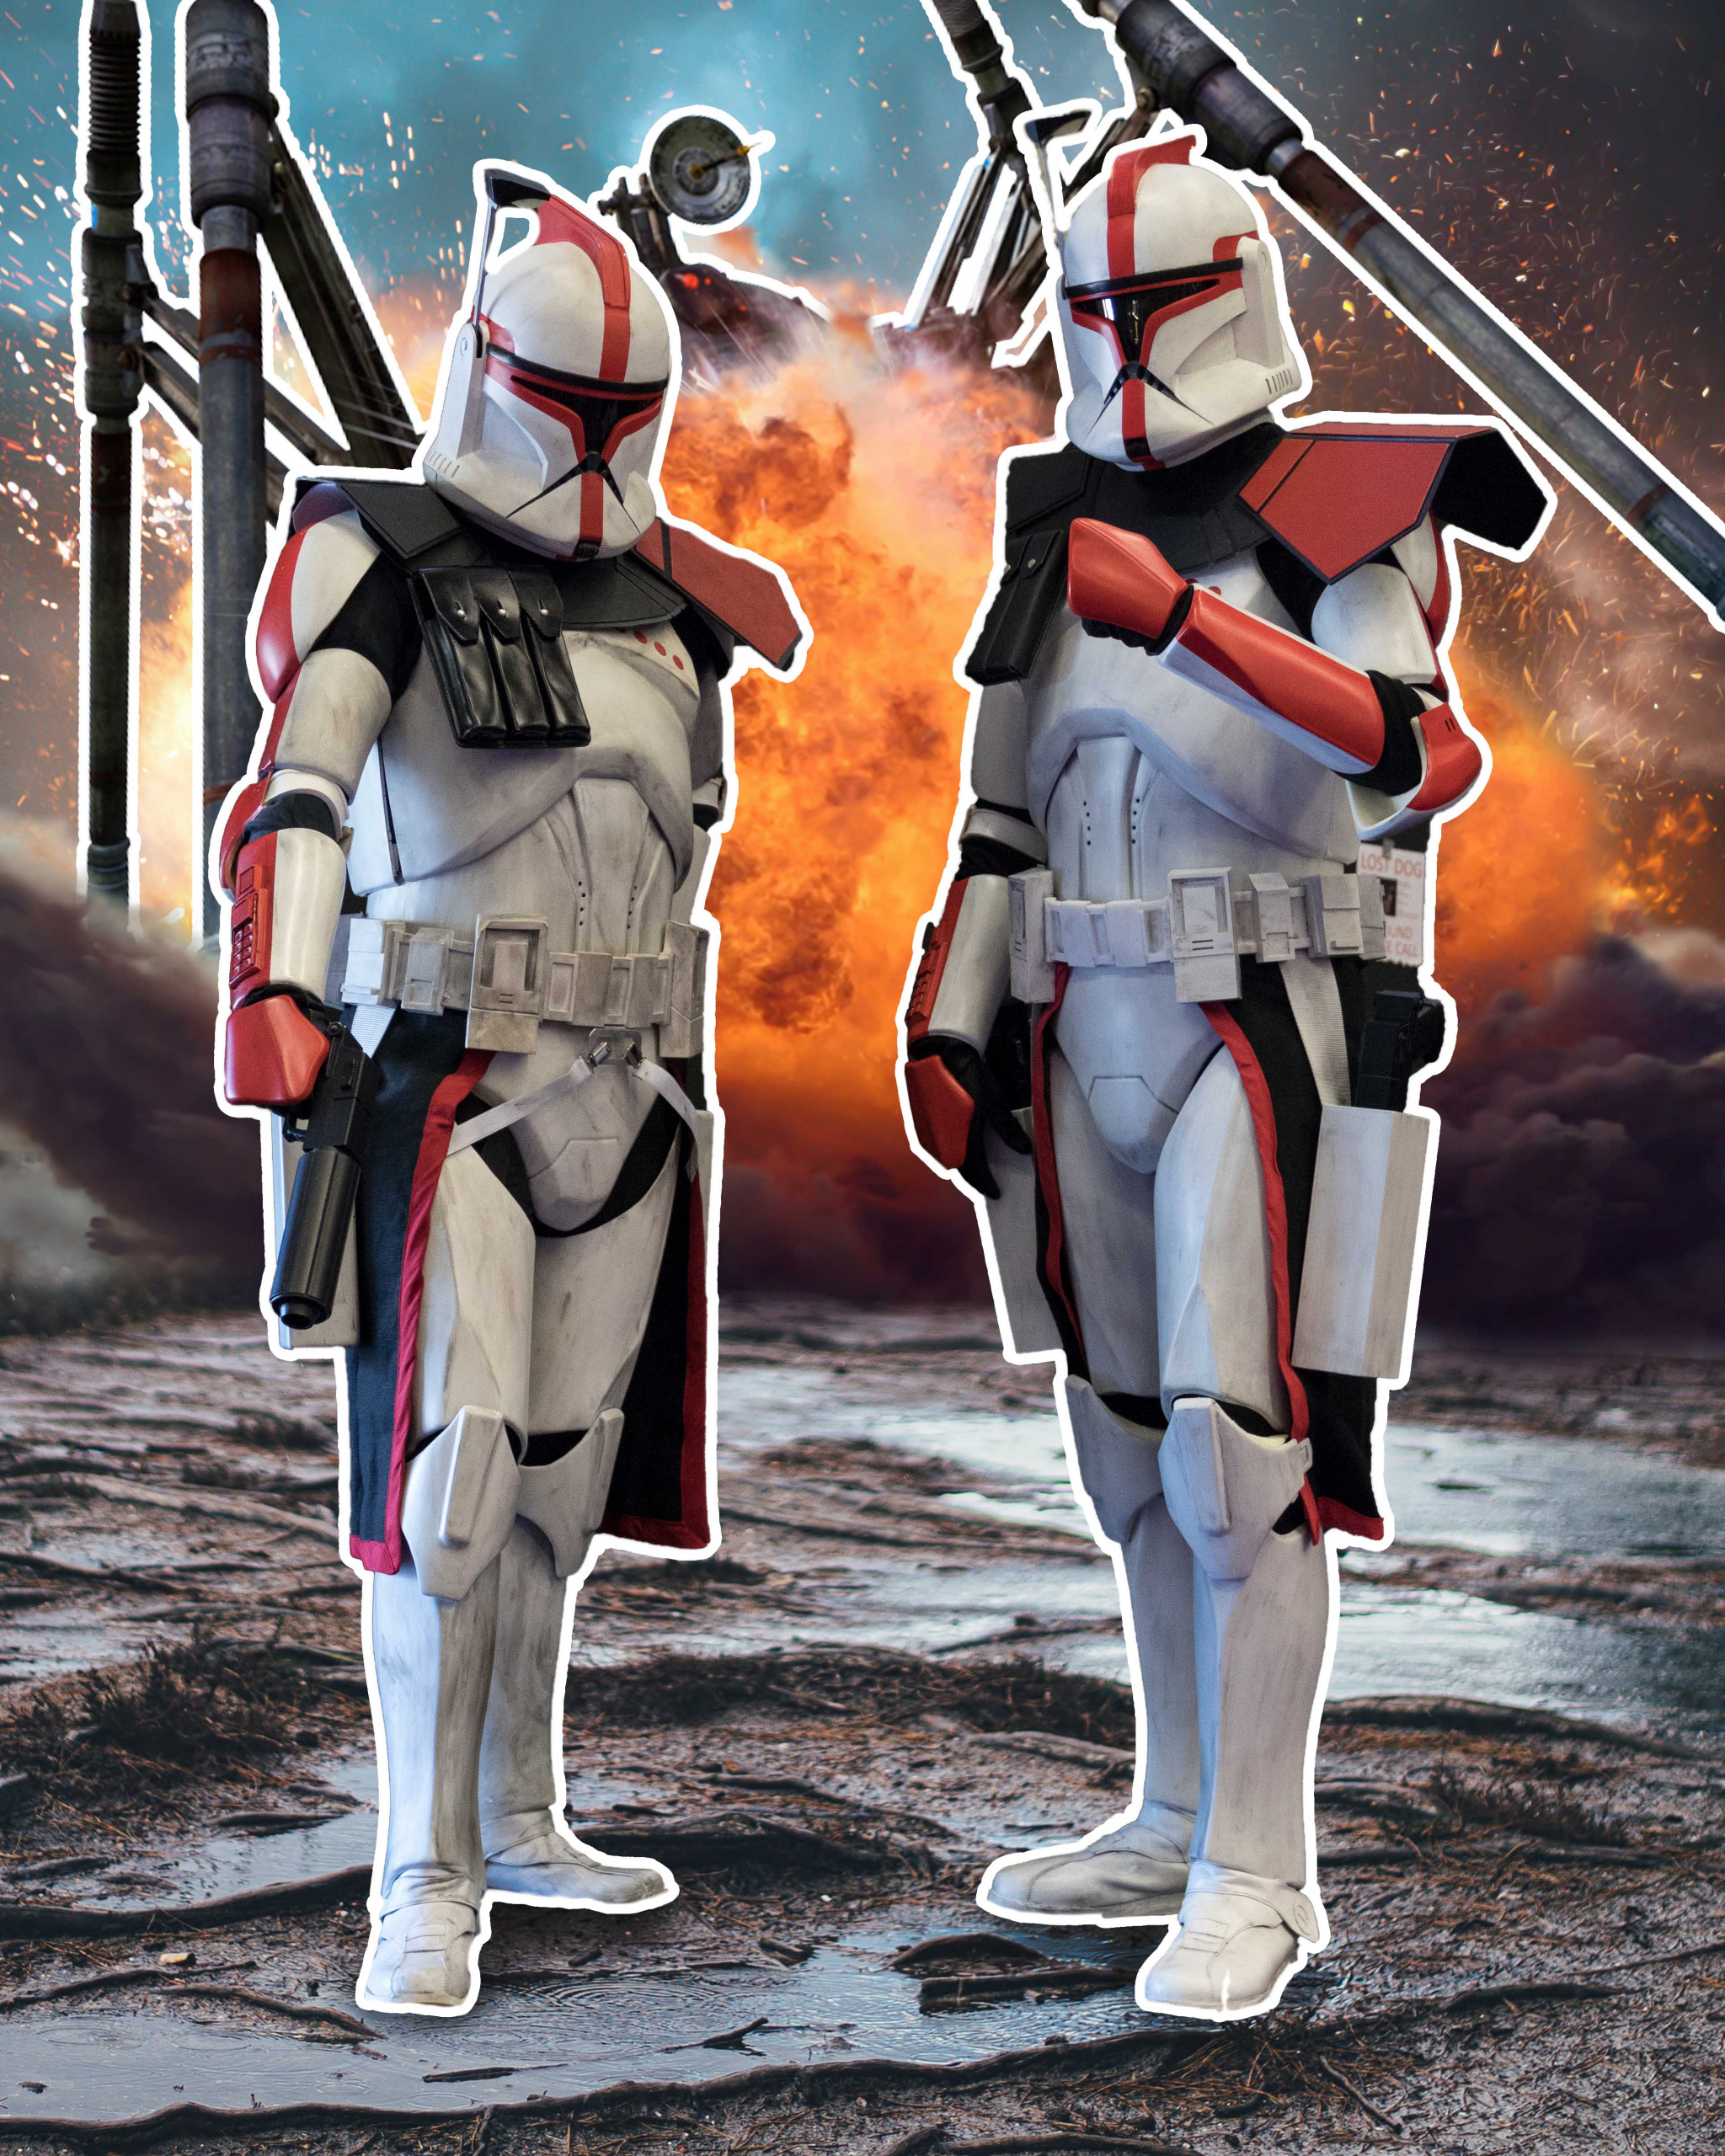 arc_troopers_comparison